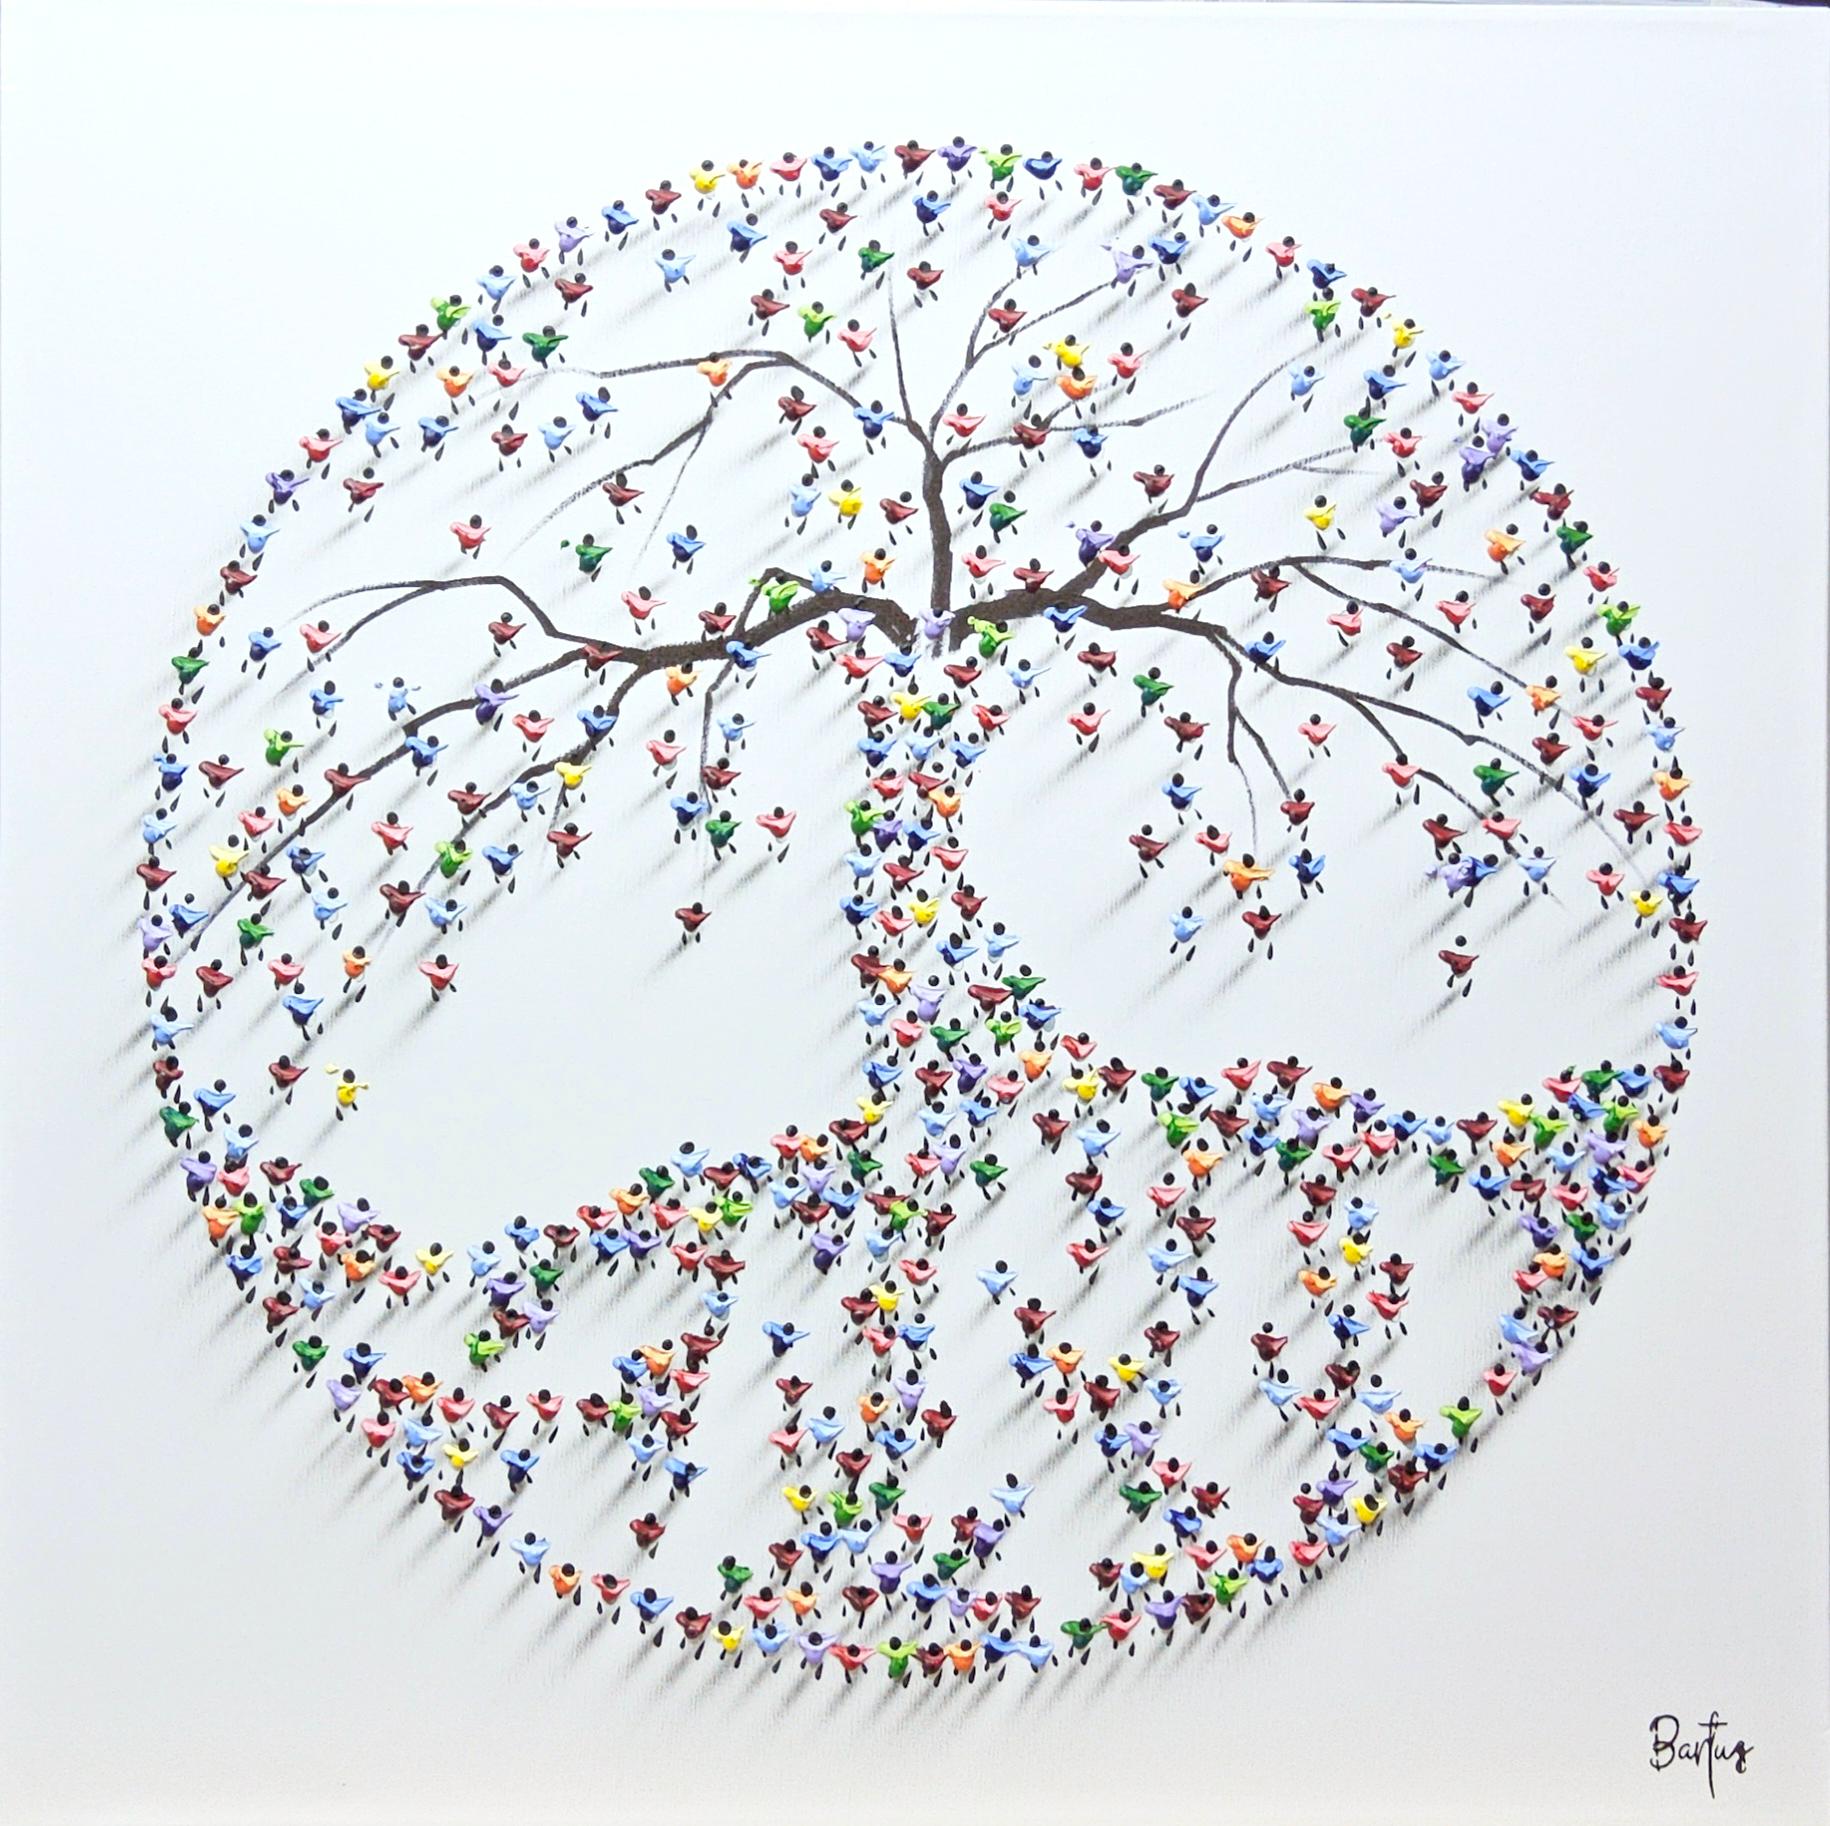 Francisco Bartus, "We Grower Stronger Together", peinture de l'arbre de vie 32x32 